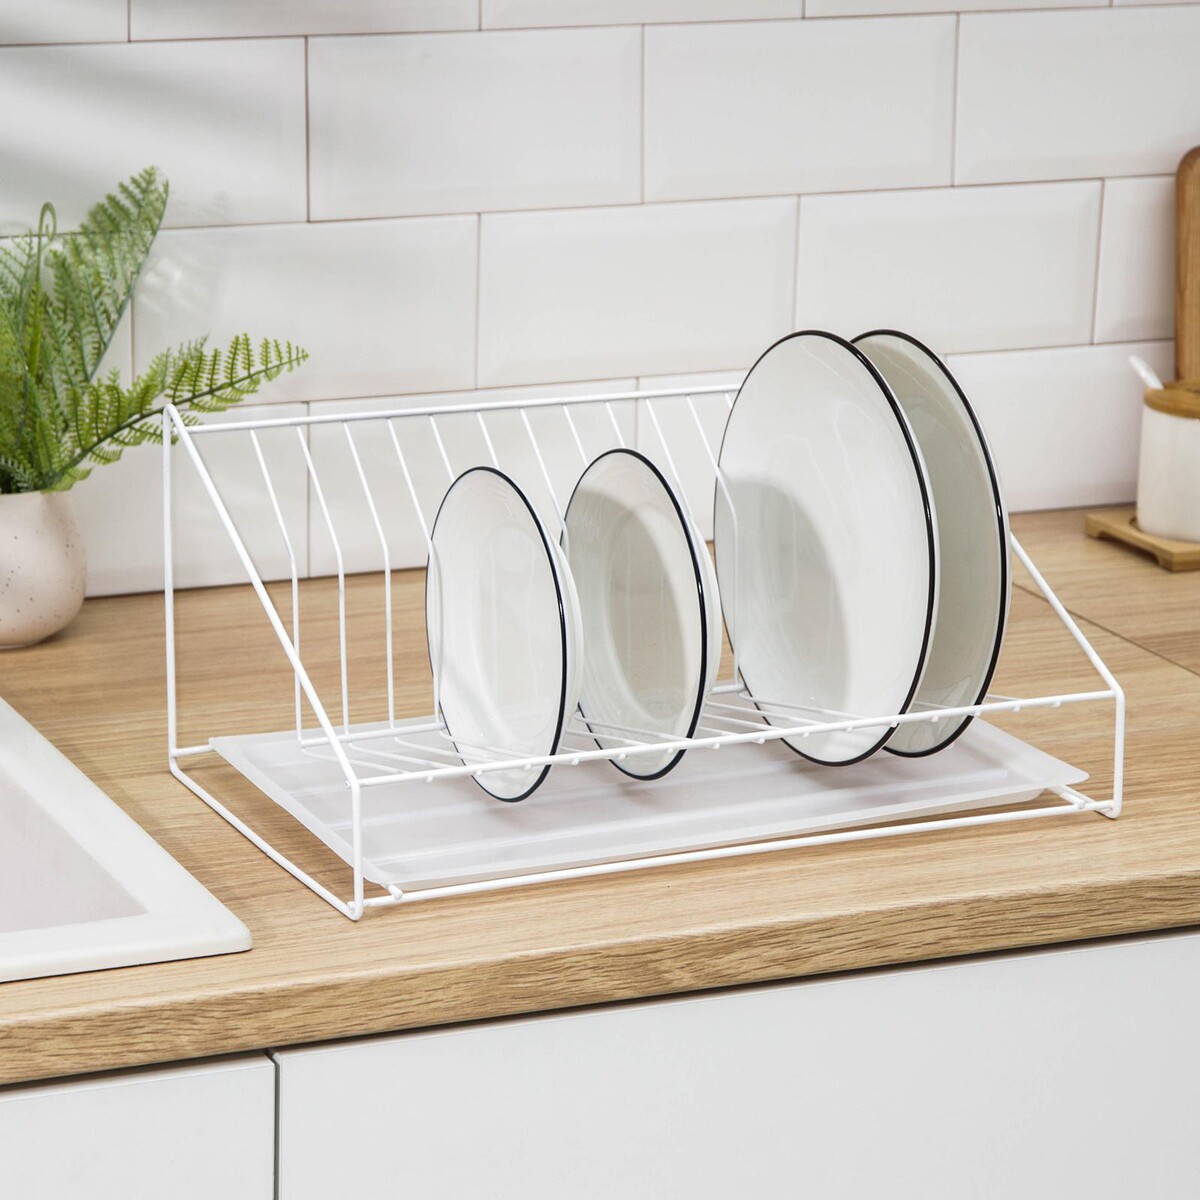 Сушилка для посуды с поддоном, 38×17,5×23,5 см, цвет белый сушилка для посуды с поддоном 38×24×38 см хром